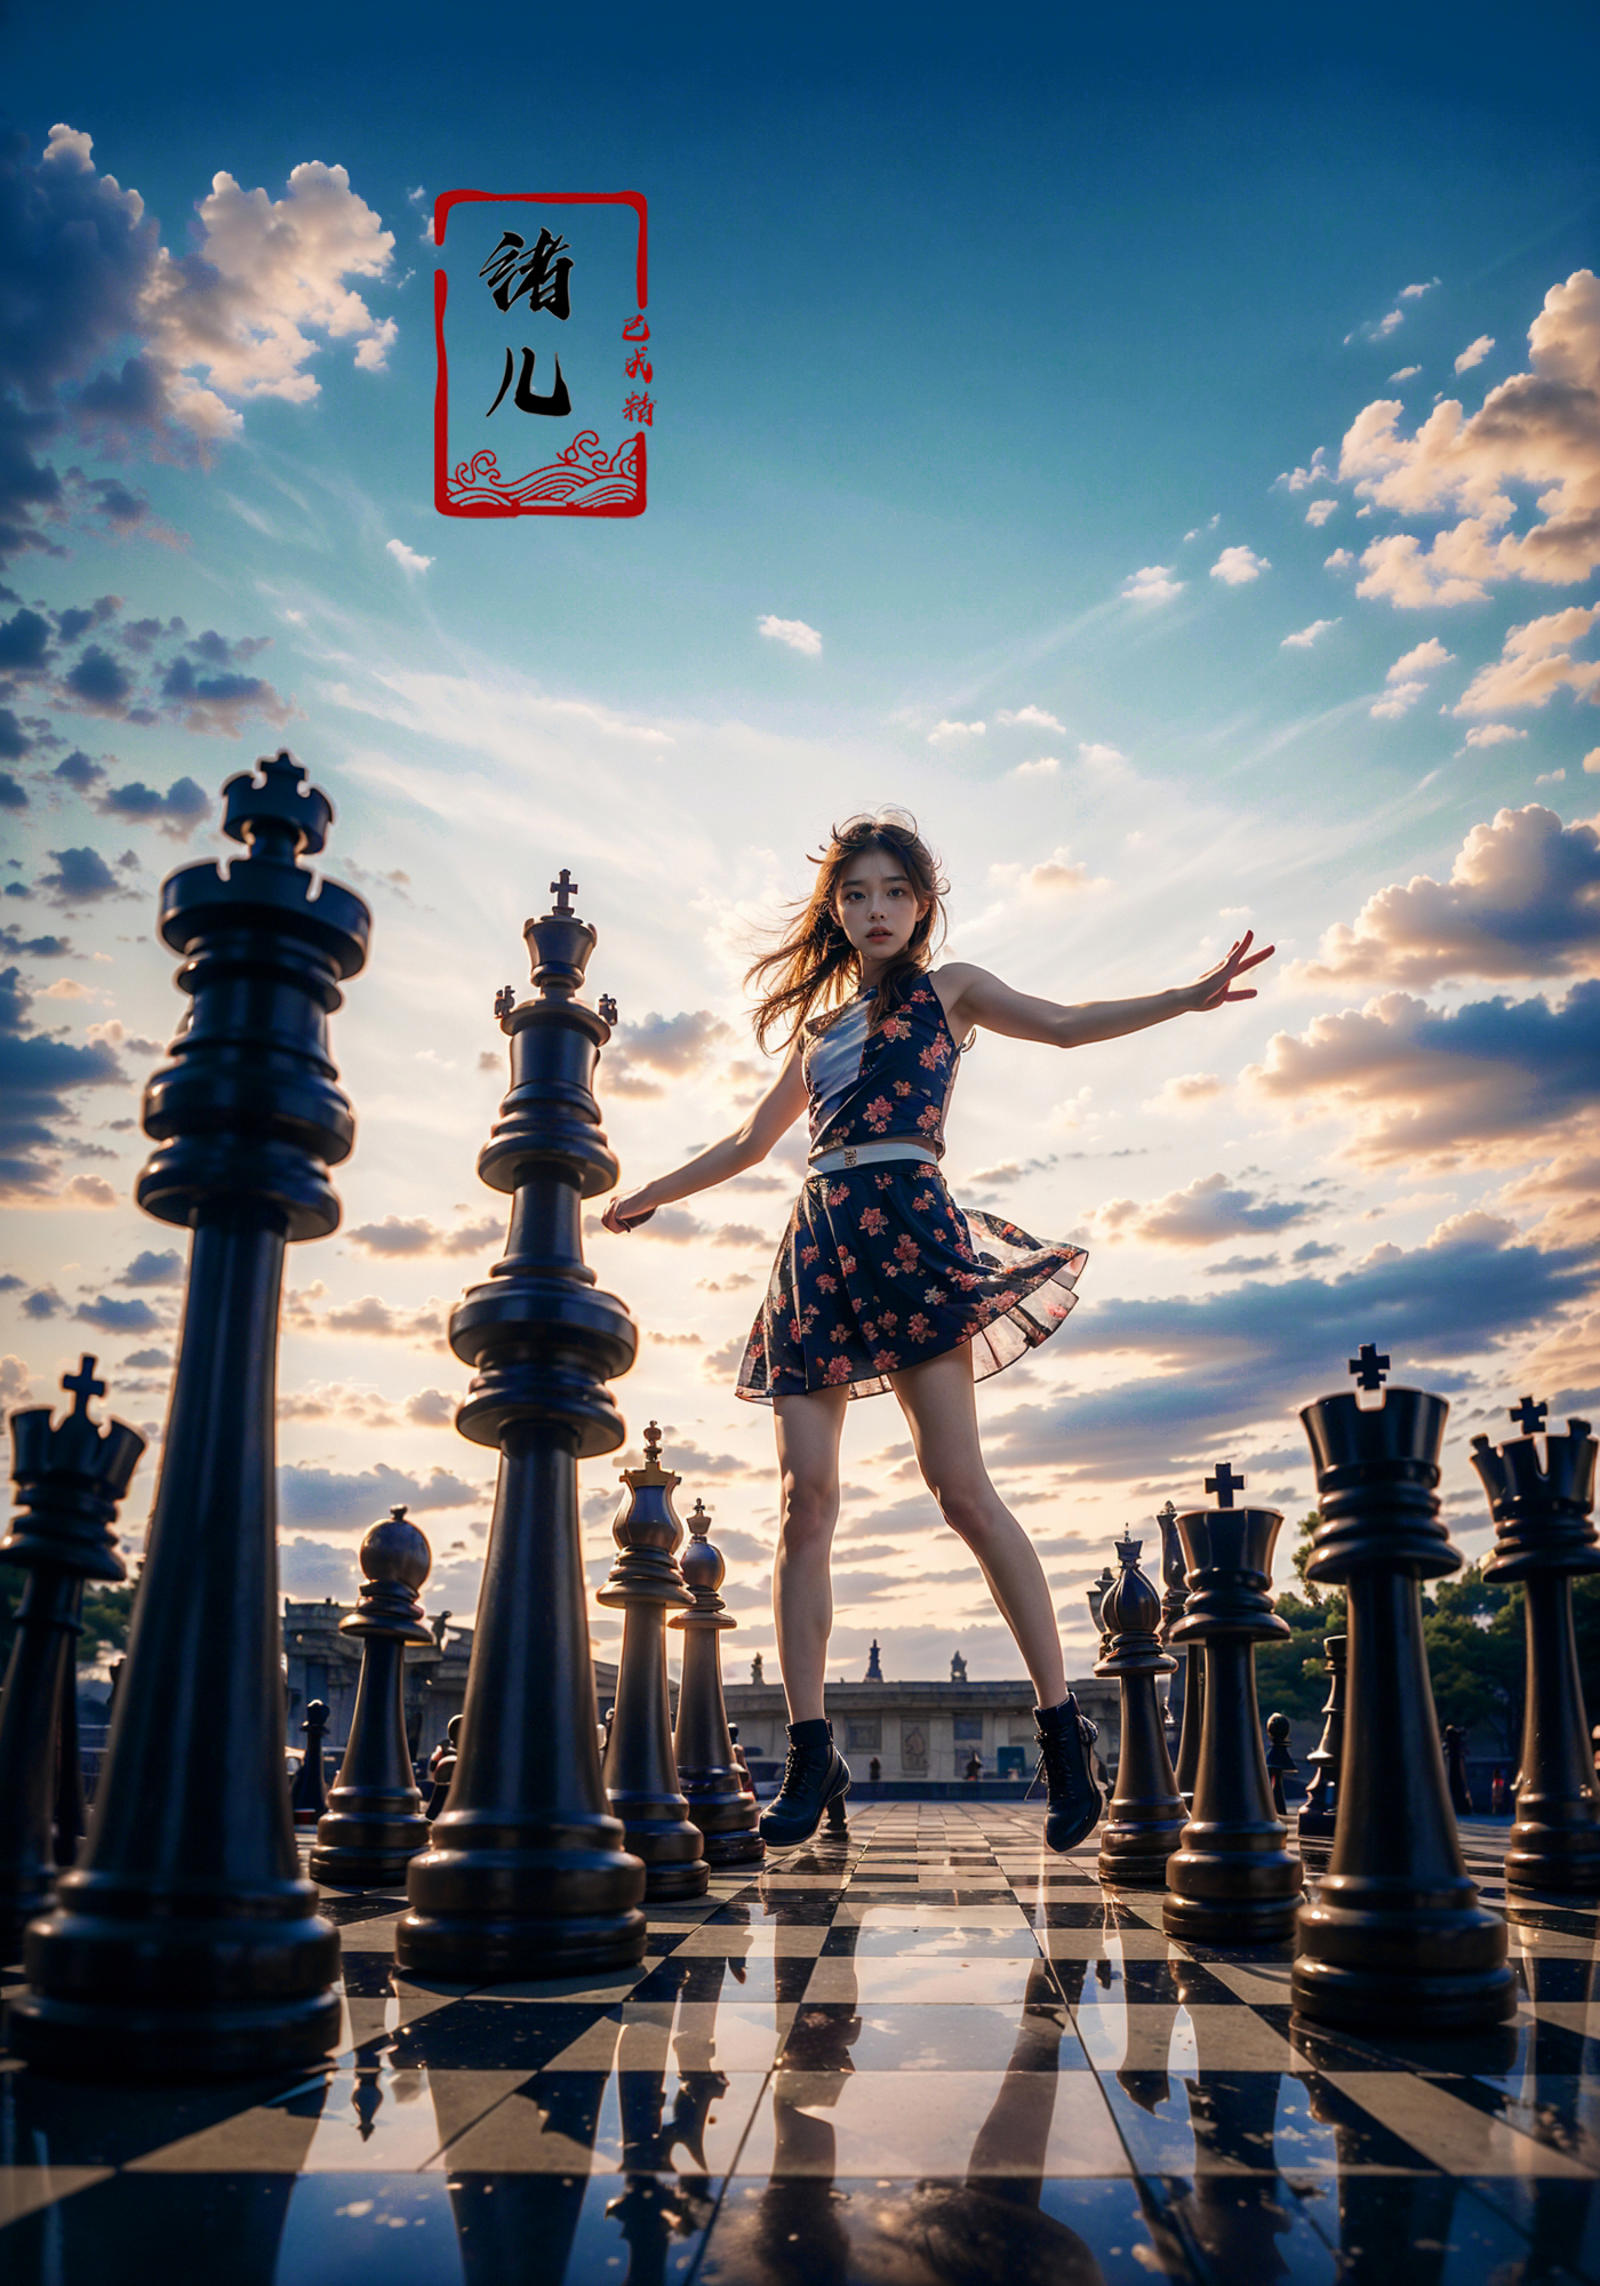 绪儿-棋中世界Chessboard world image by XRYCJ